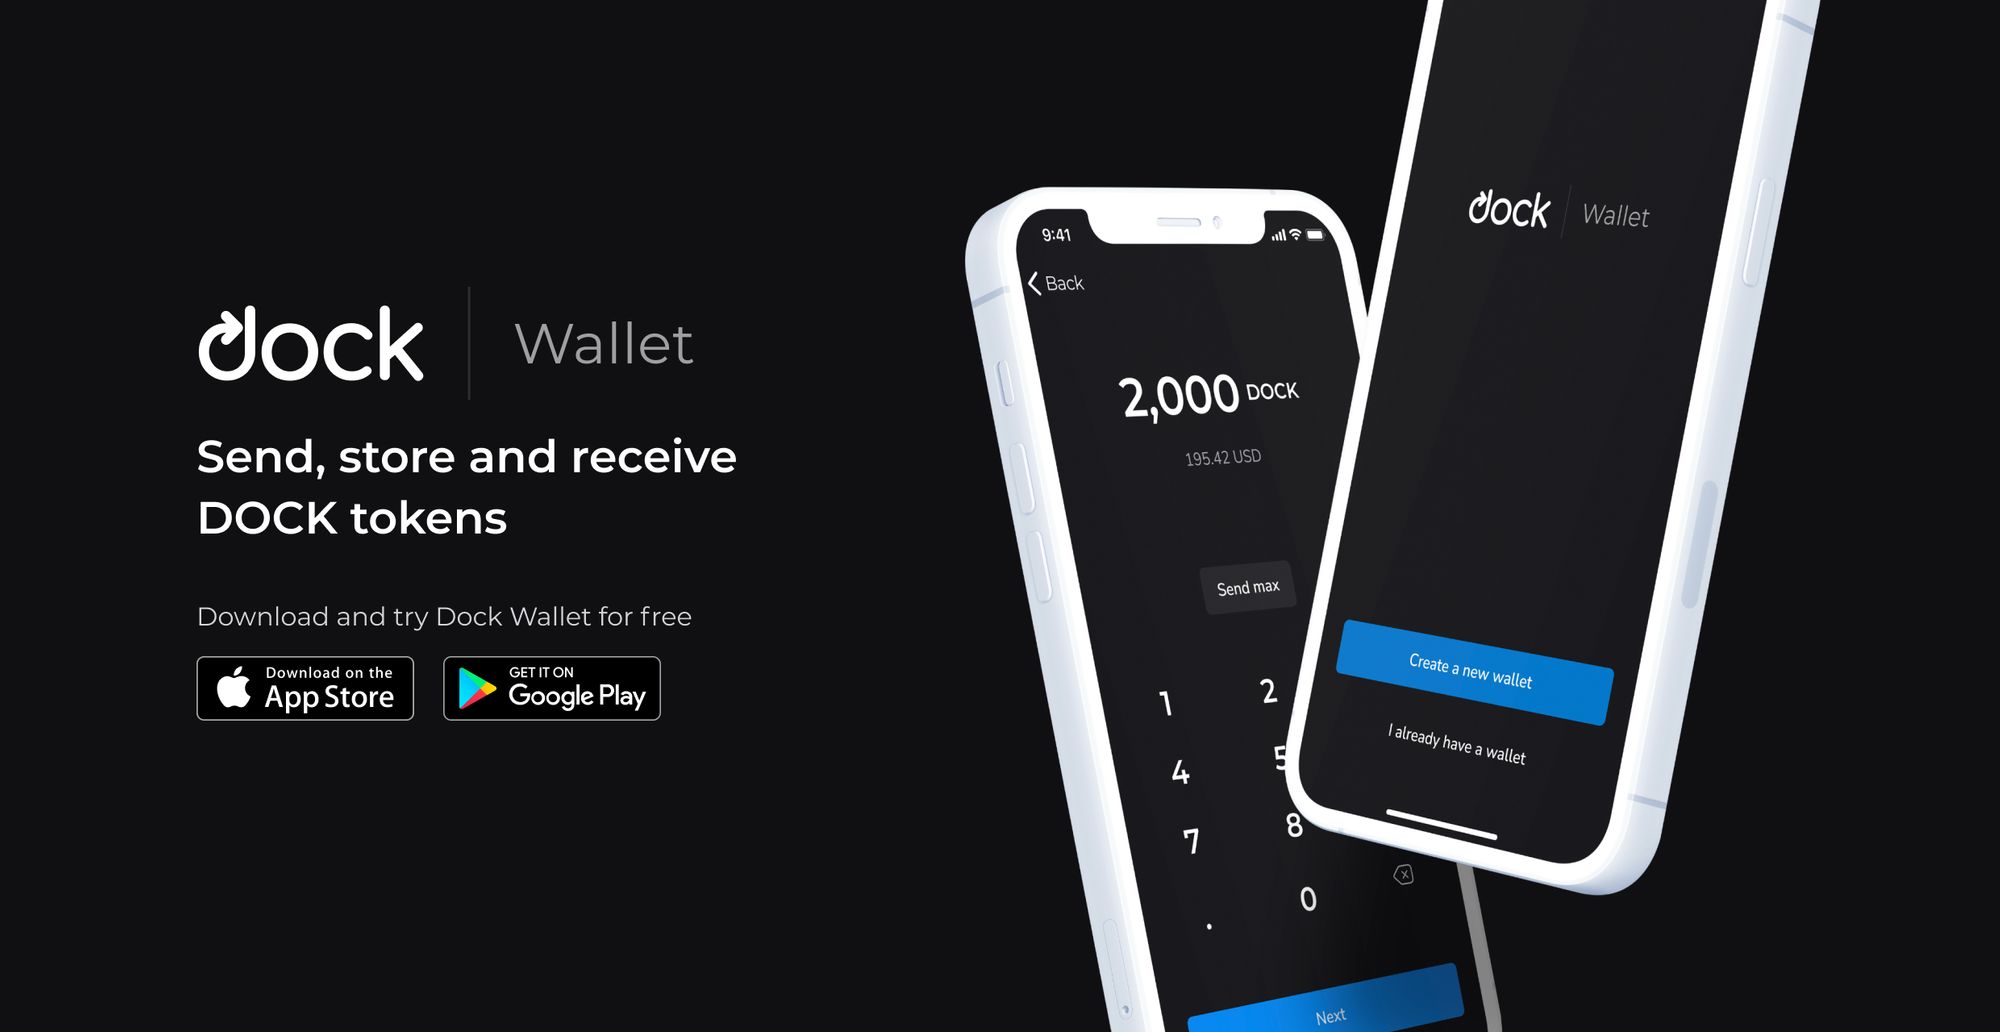 Launch of the Dock Wallet App